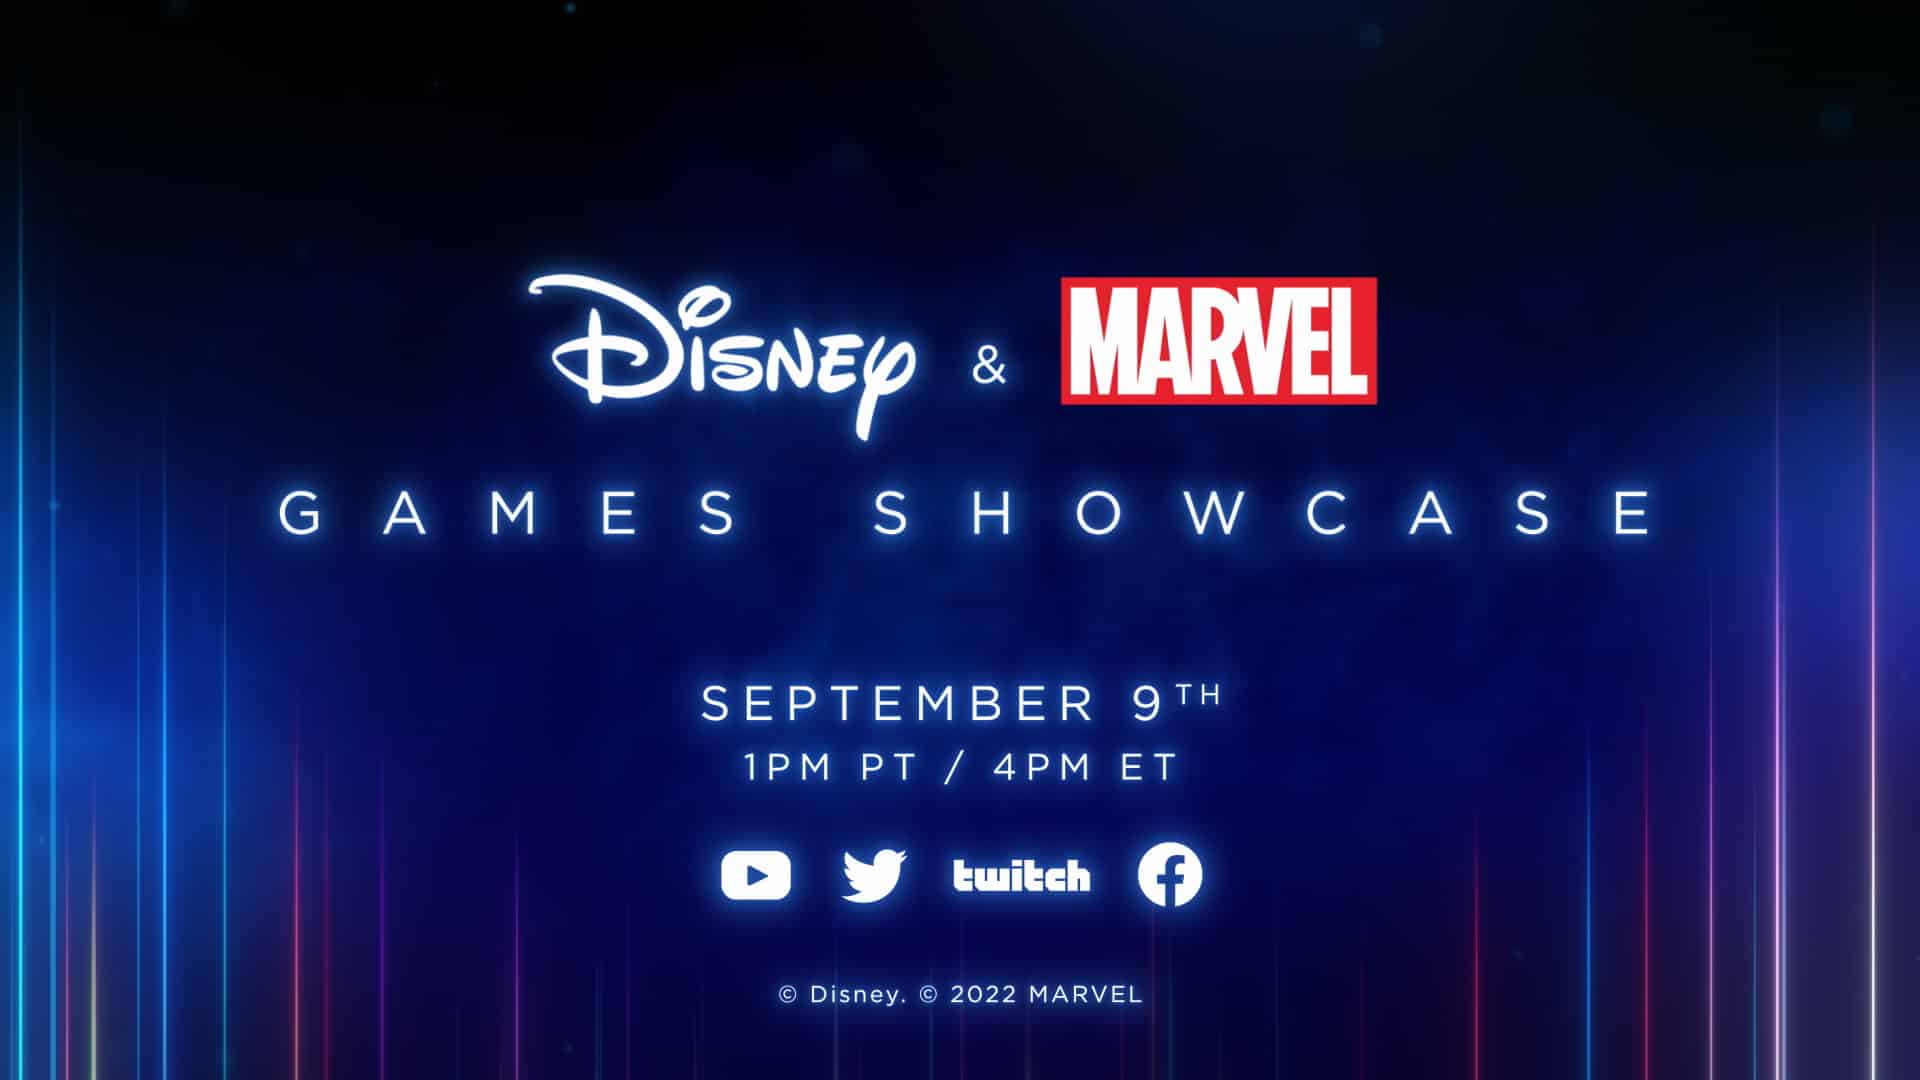 Disney & Marvel Games Showcase stream